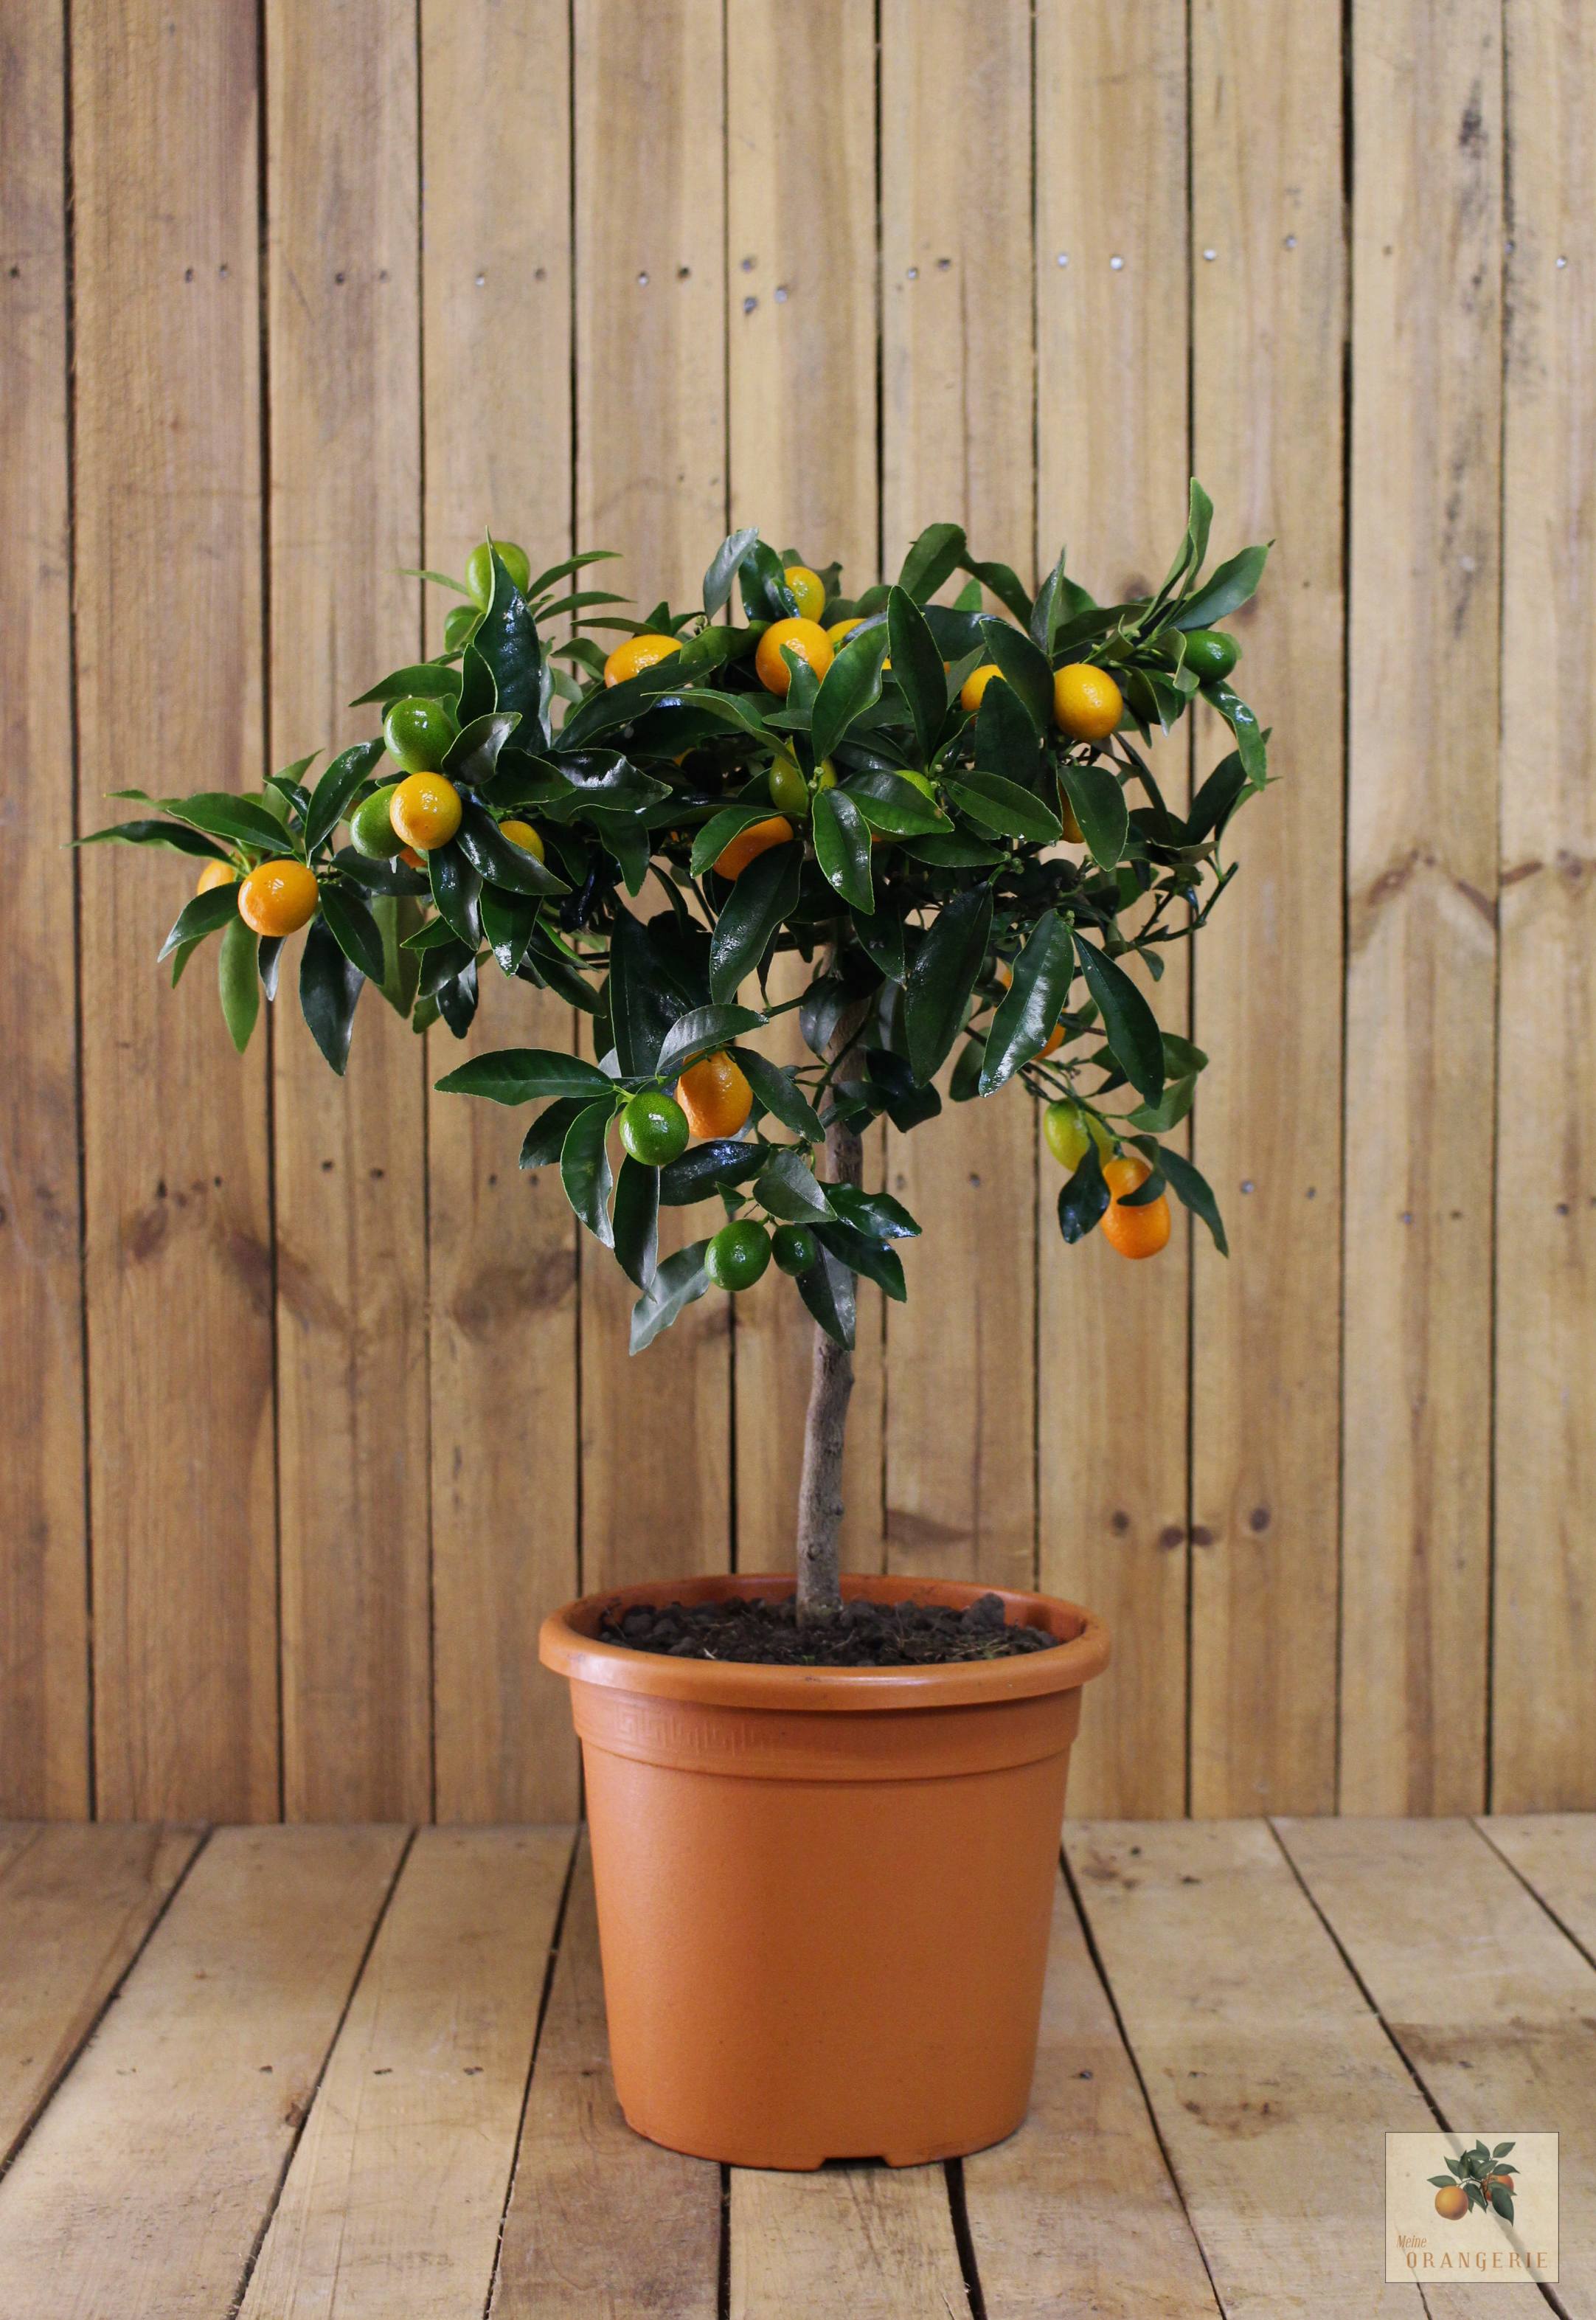 Kumquat [Mezzo] - Citrus japonica - Fortunella margarita